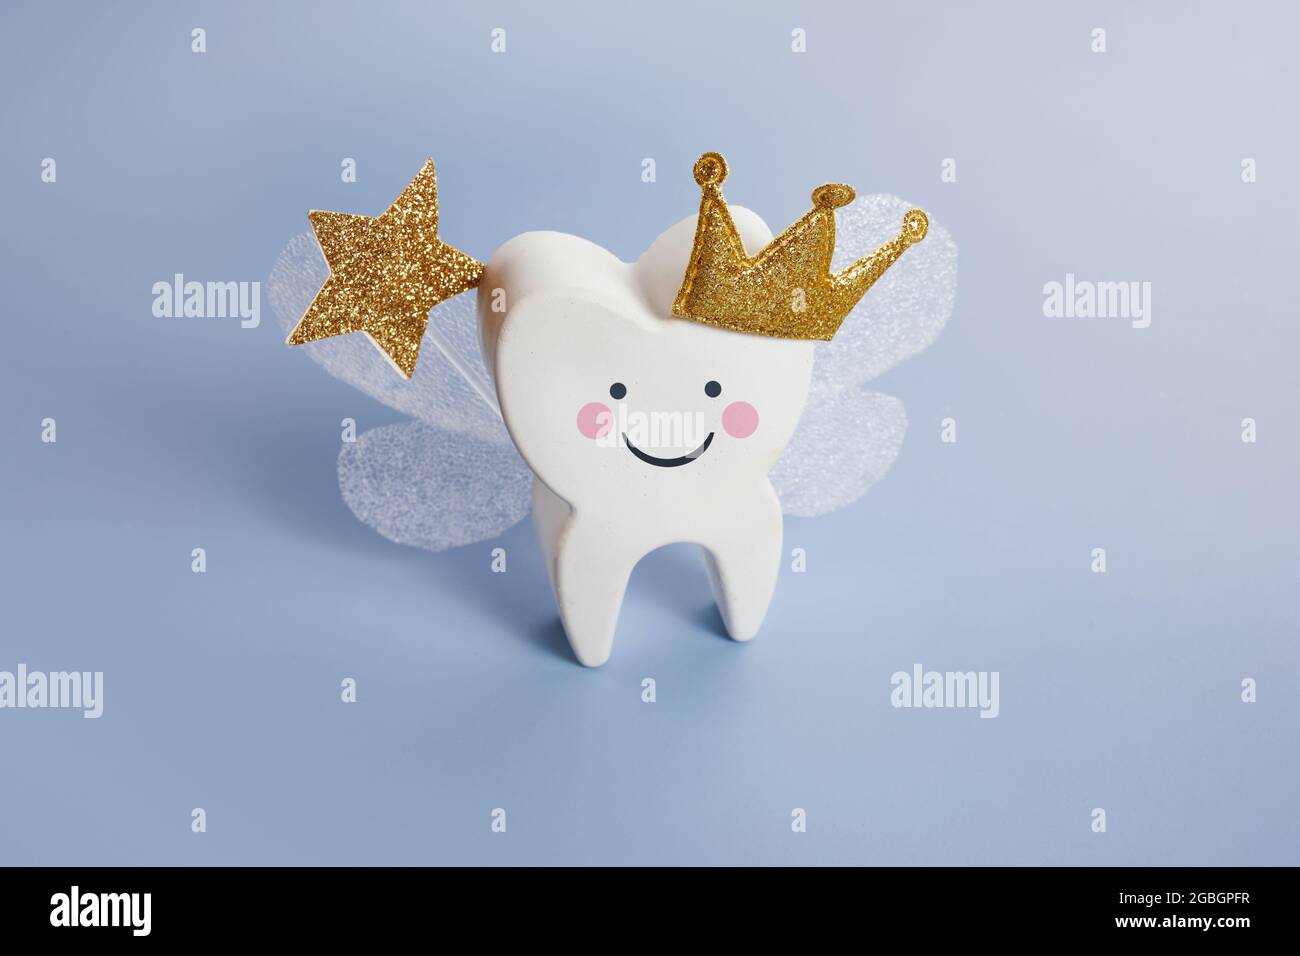 Festa nazionale del dente. Fata dei denti dei bambini. Carino dente con le ali, una corona. Foto Stock